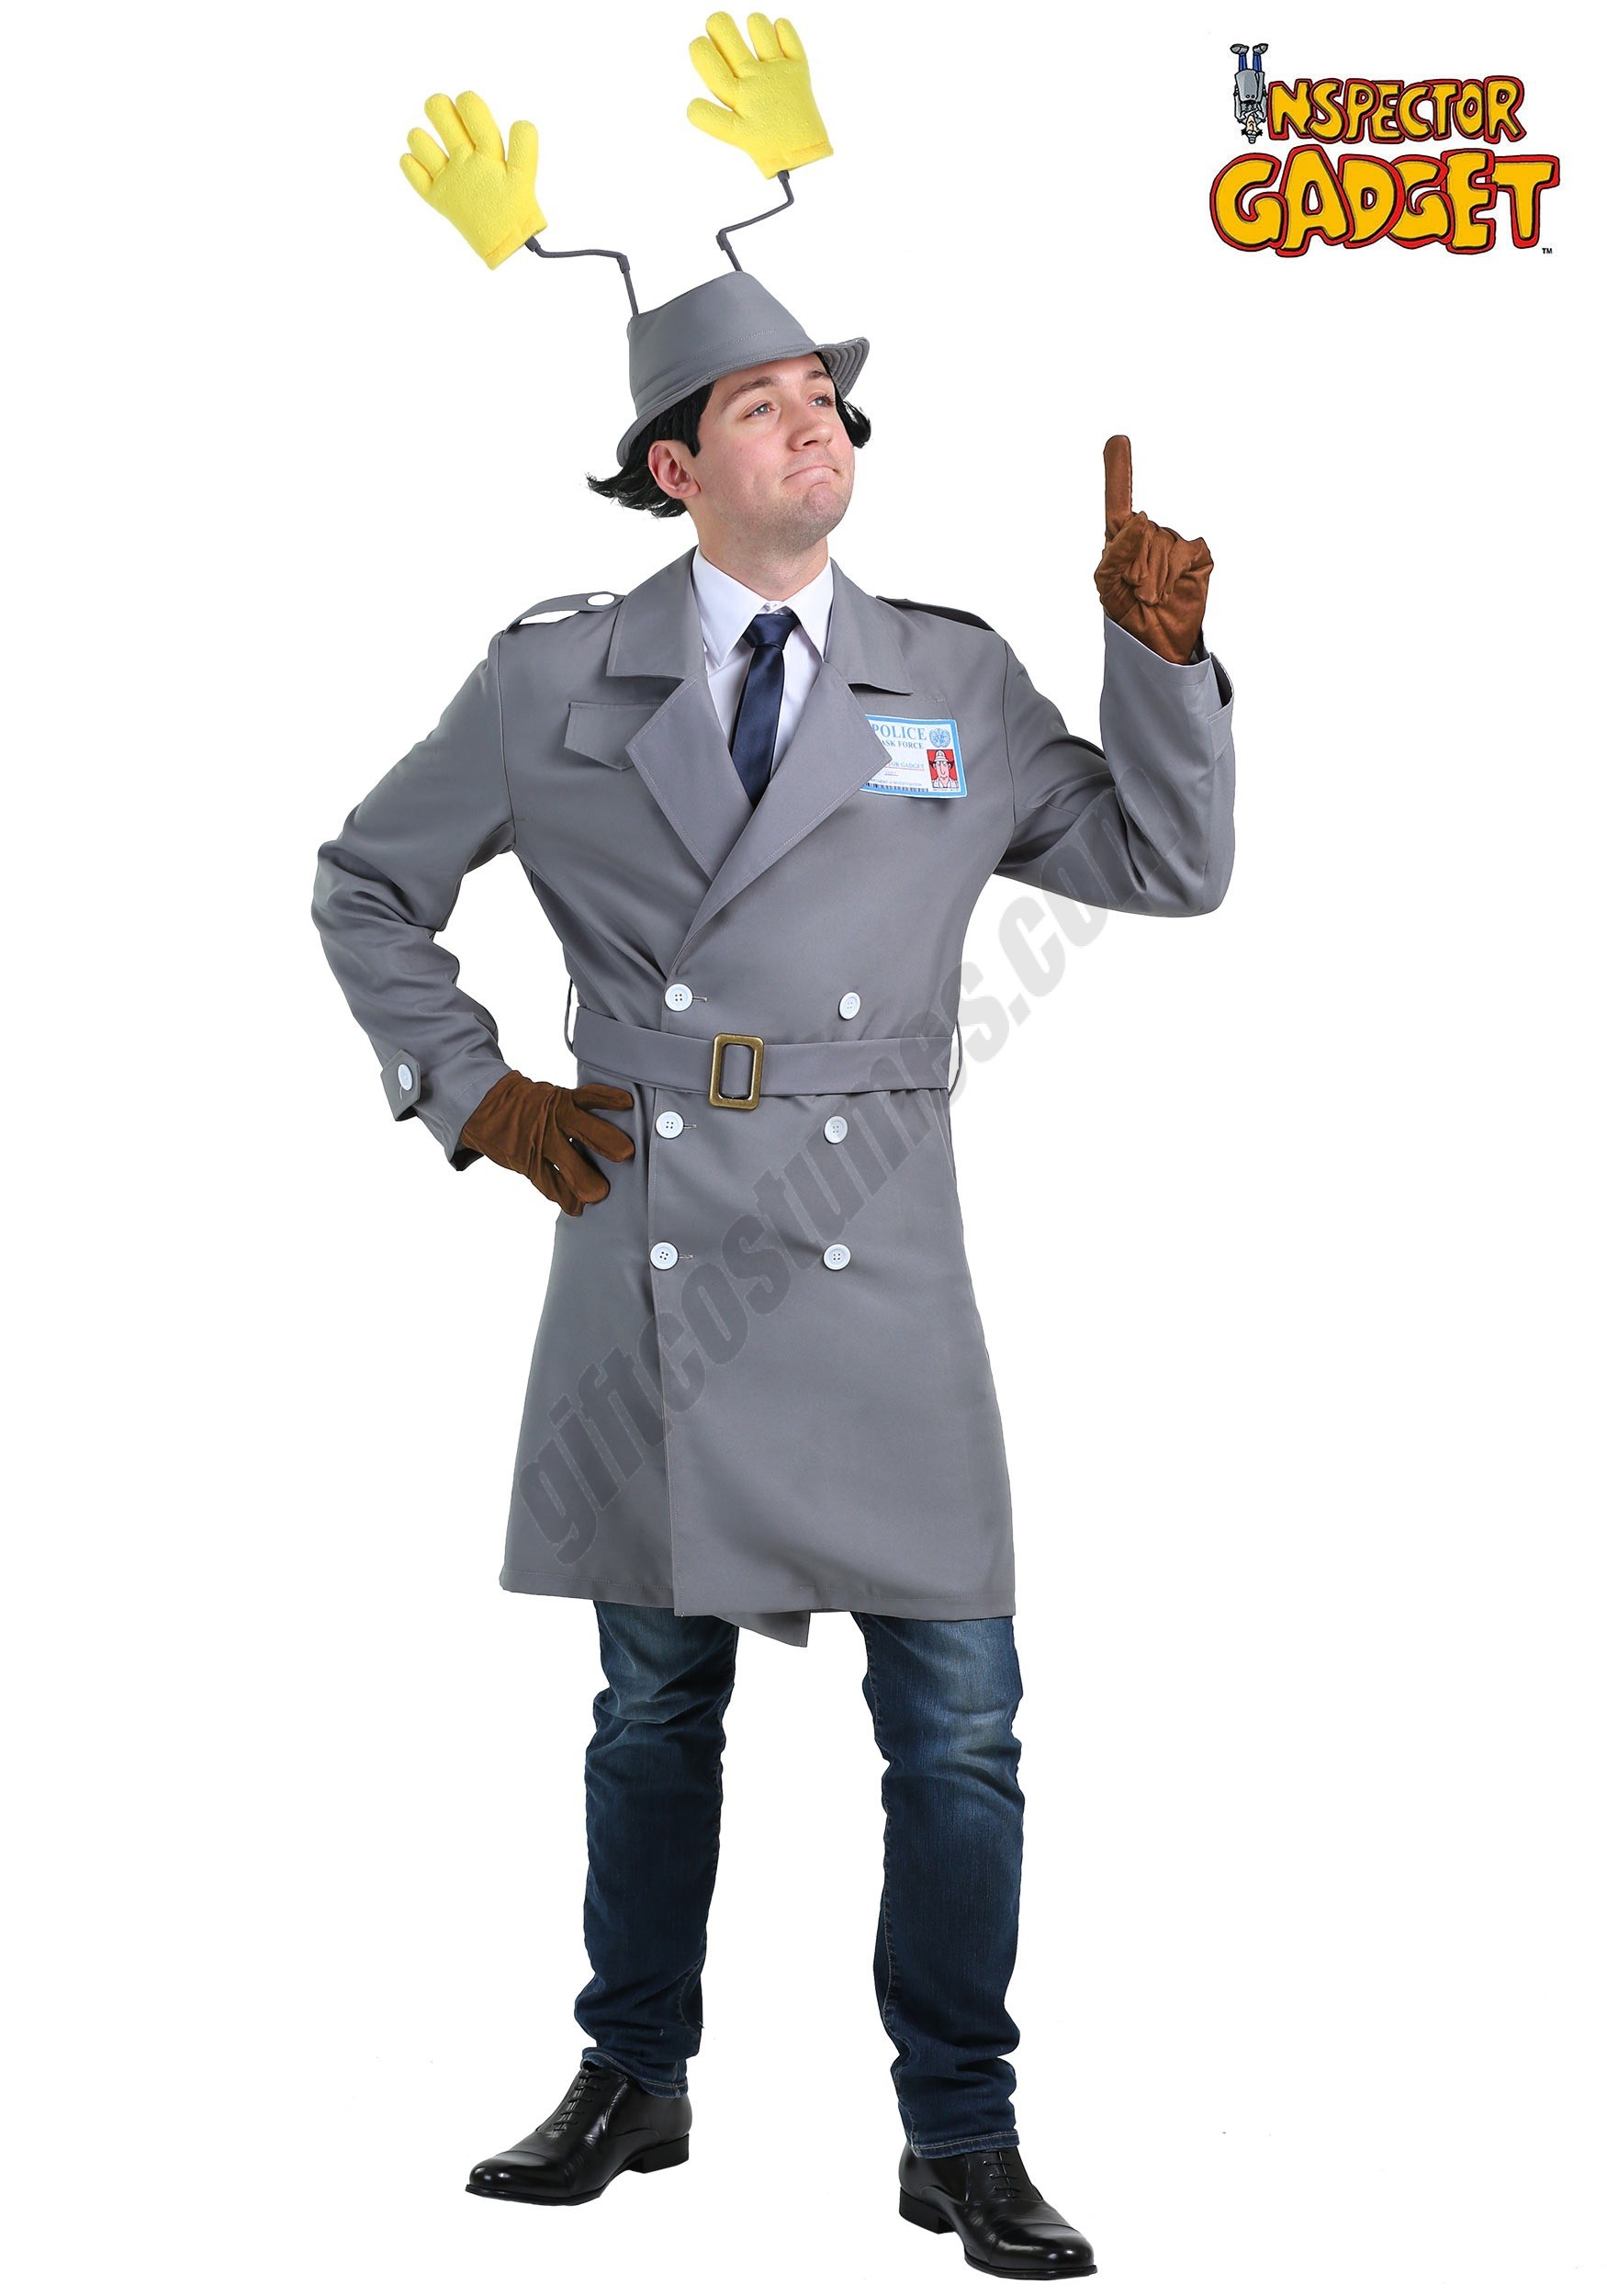 Men's Inspector Gadget Costume Promotions - Men's Inspector Gadget Costume Promotions